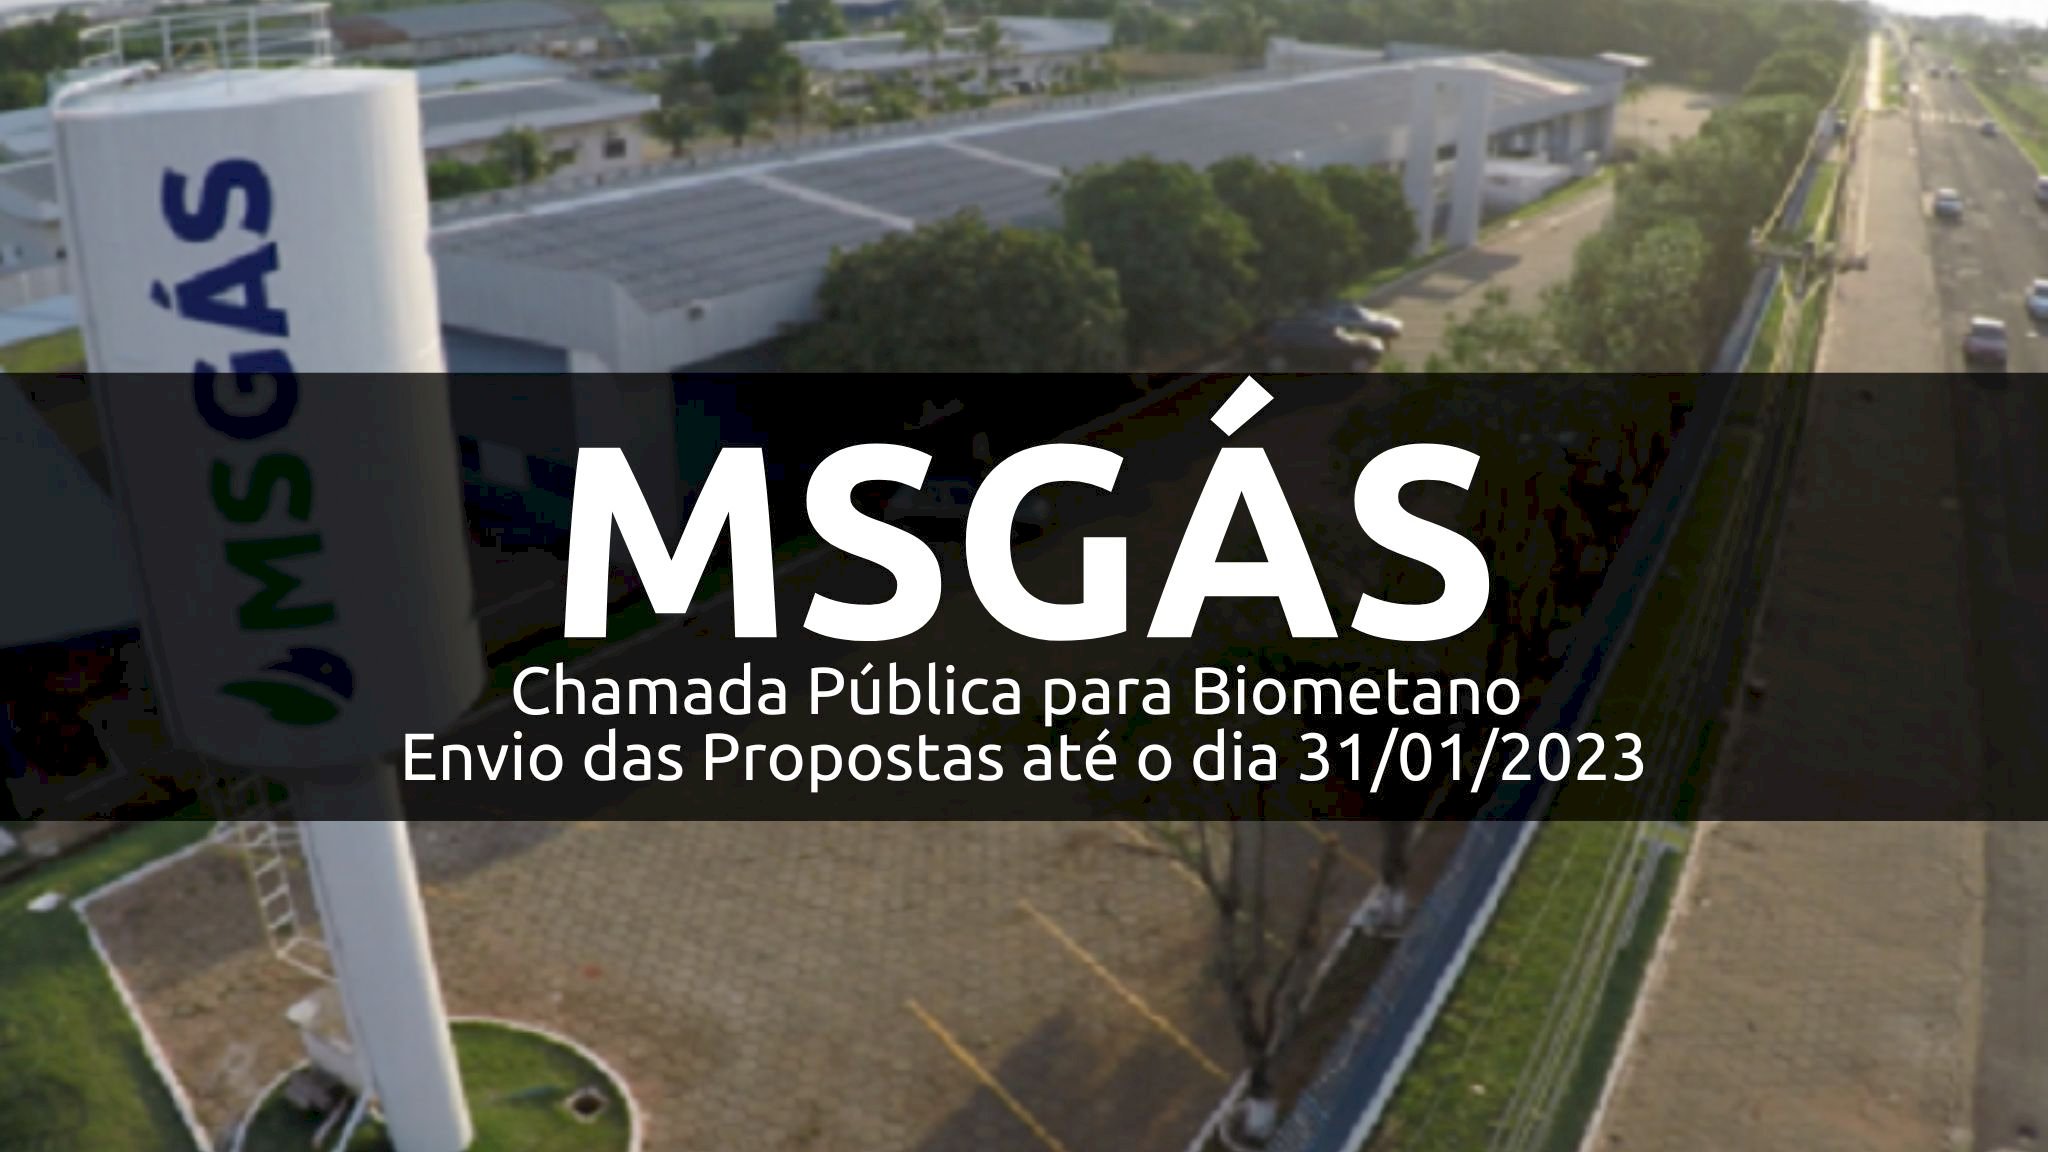 MSGÁS - Chamada Pública para Biometano